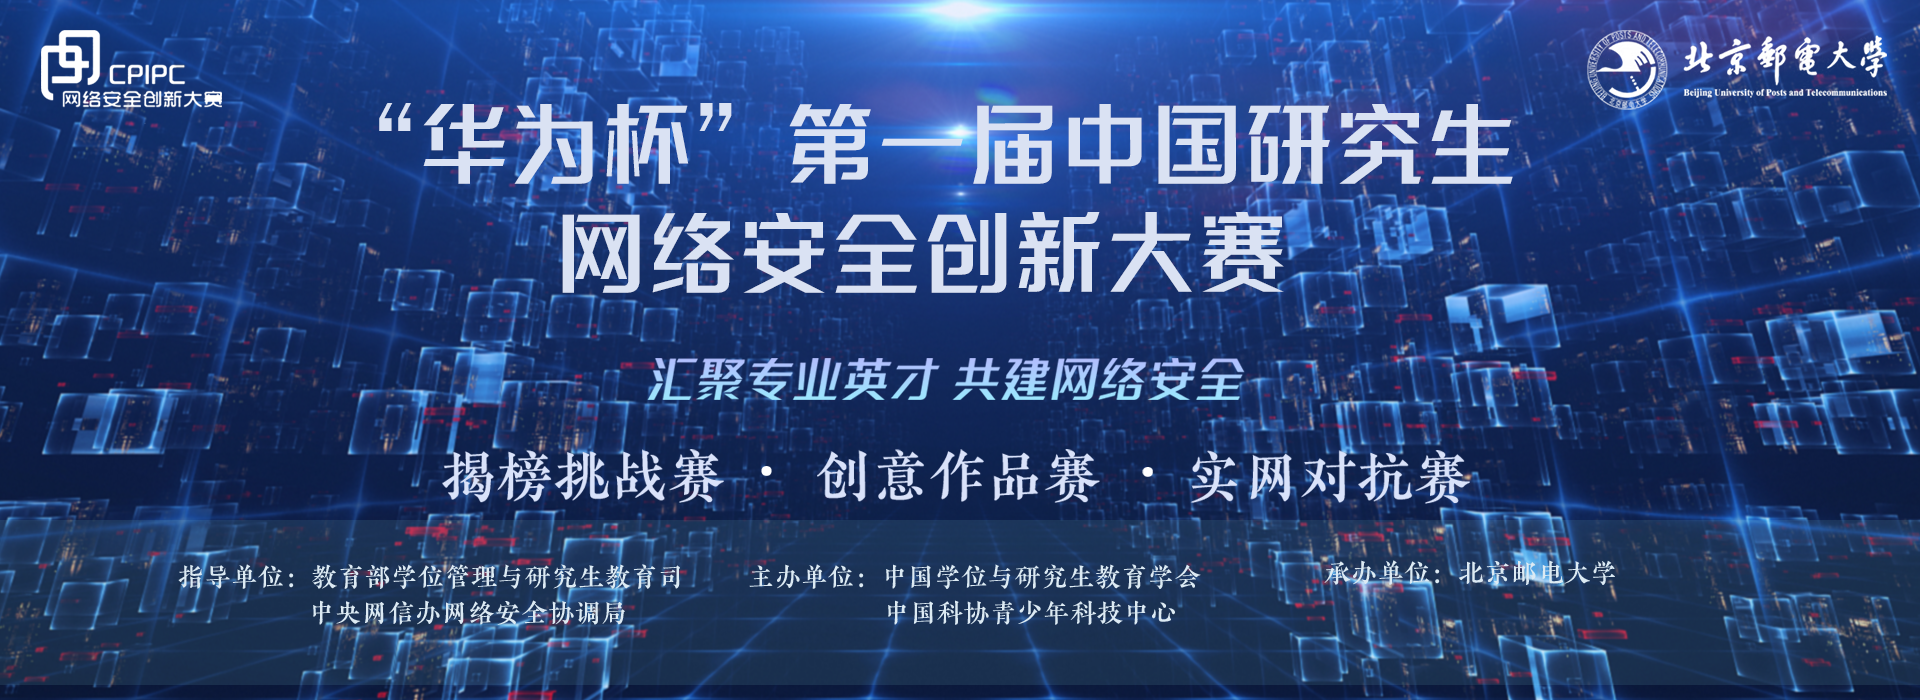 国际联合实验室研究生获“华为杯”第一届中国研究生网络安全创新大赛全国三等奖